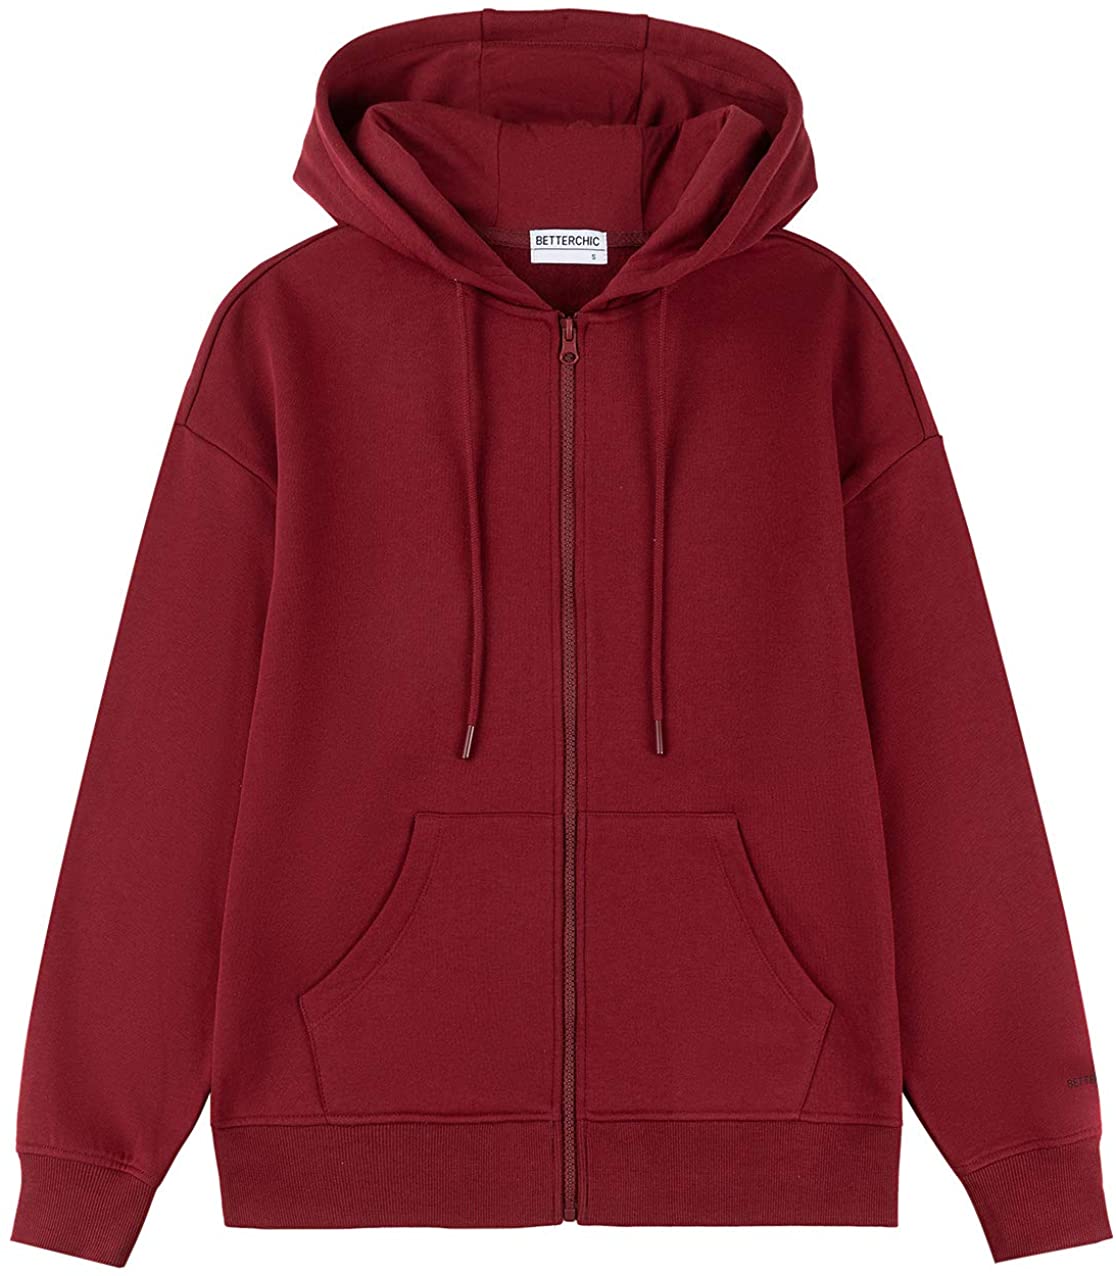 BETTERCHIC Women's Hooded Sweatshirt Casual Soft Brushed Fleece Hoody Drop Shoulder Full Zip Up Hoodie Size S-2XL 